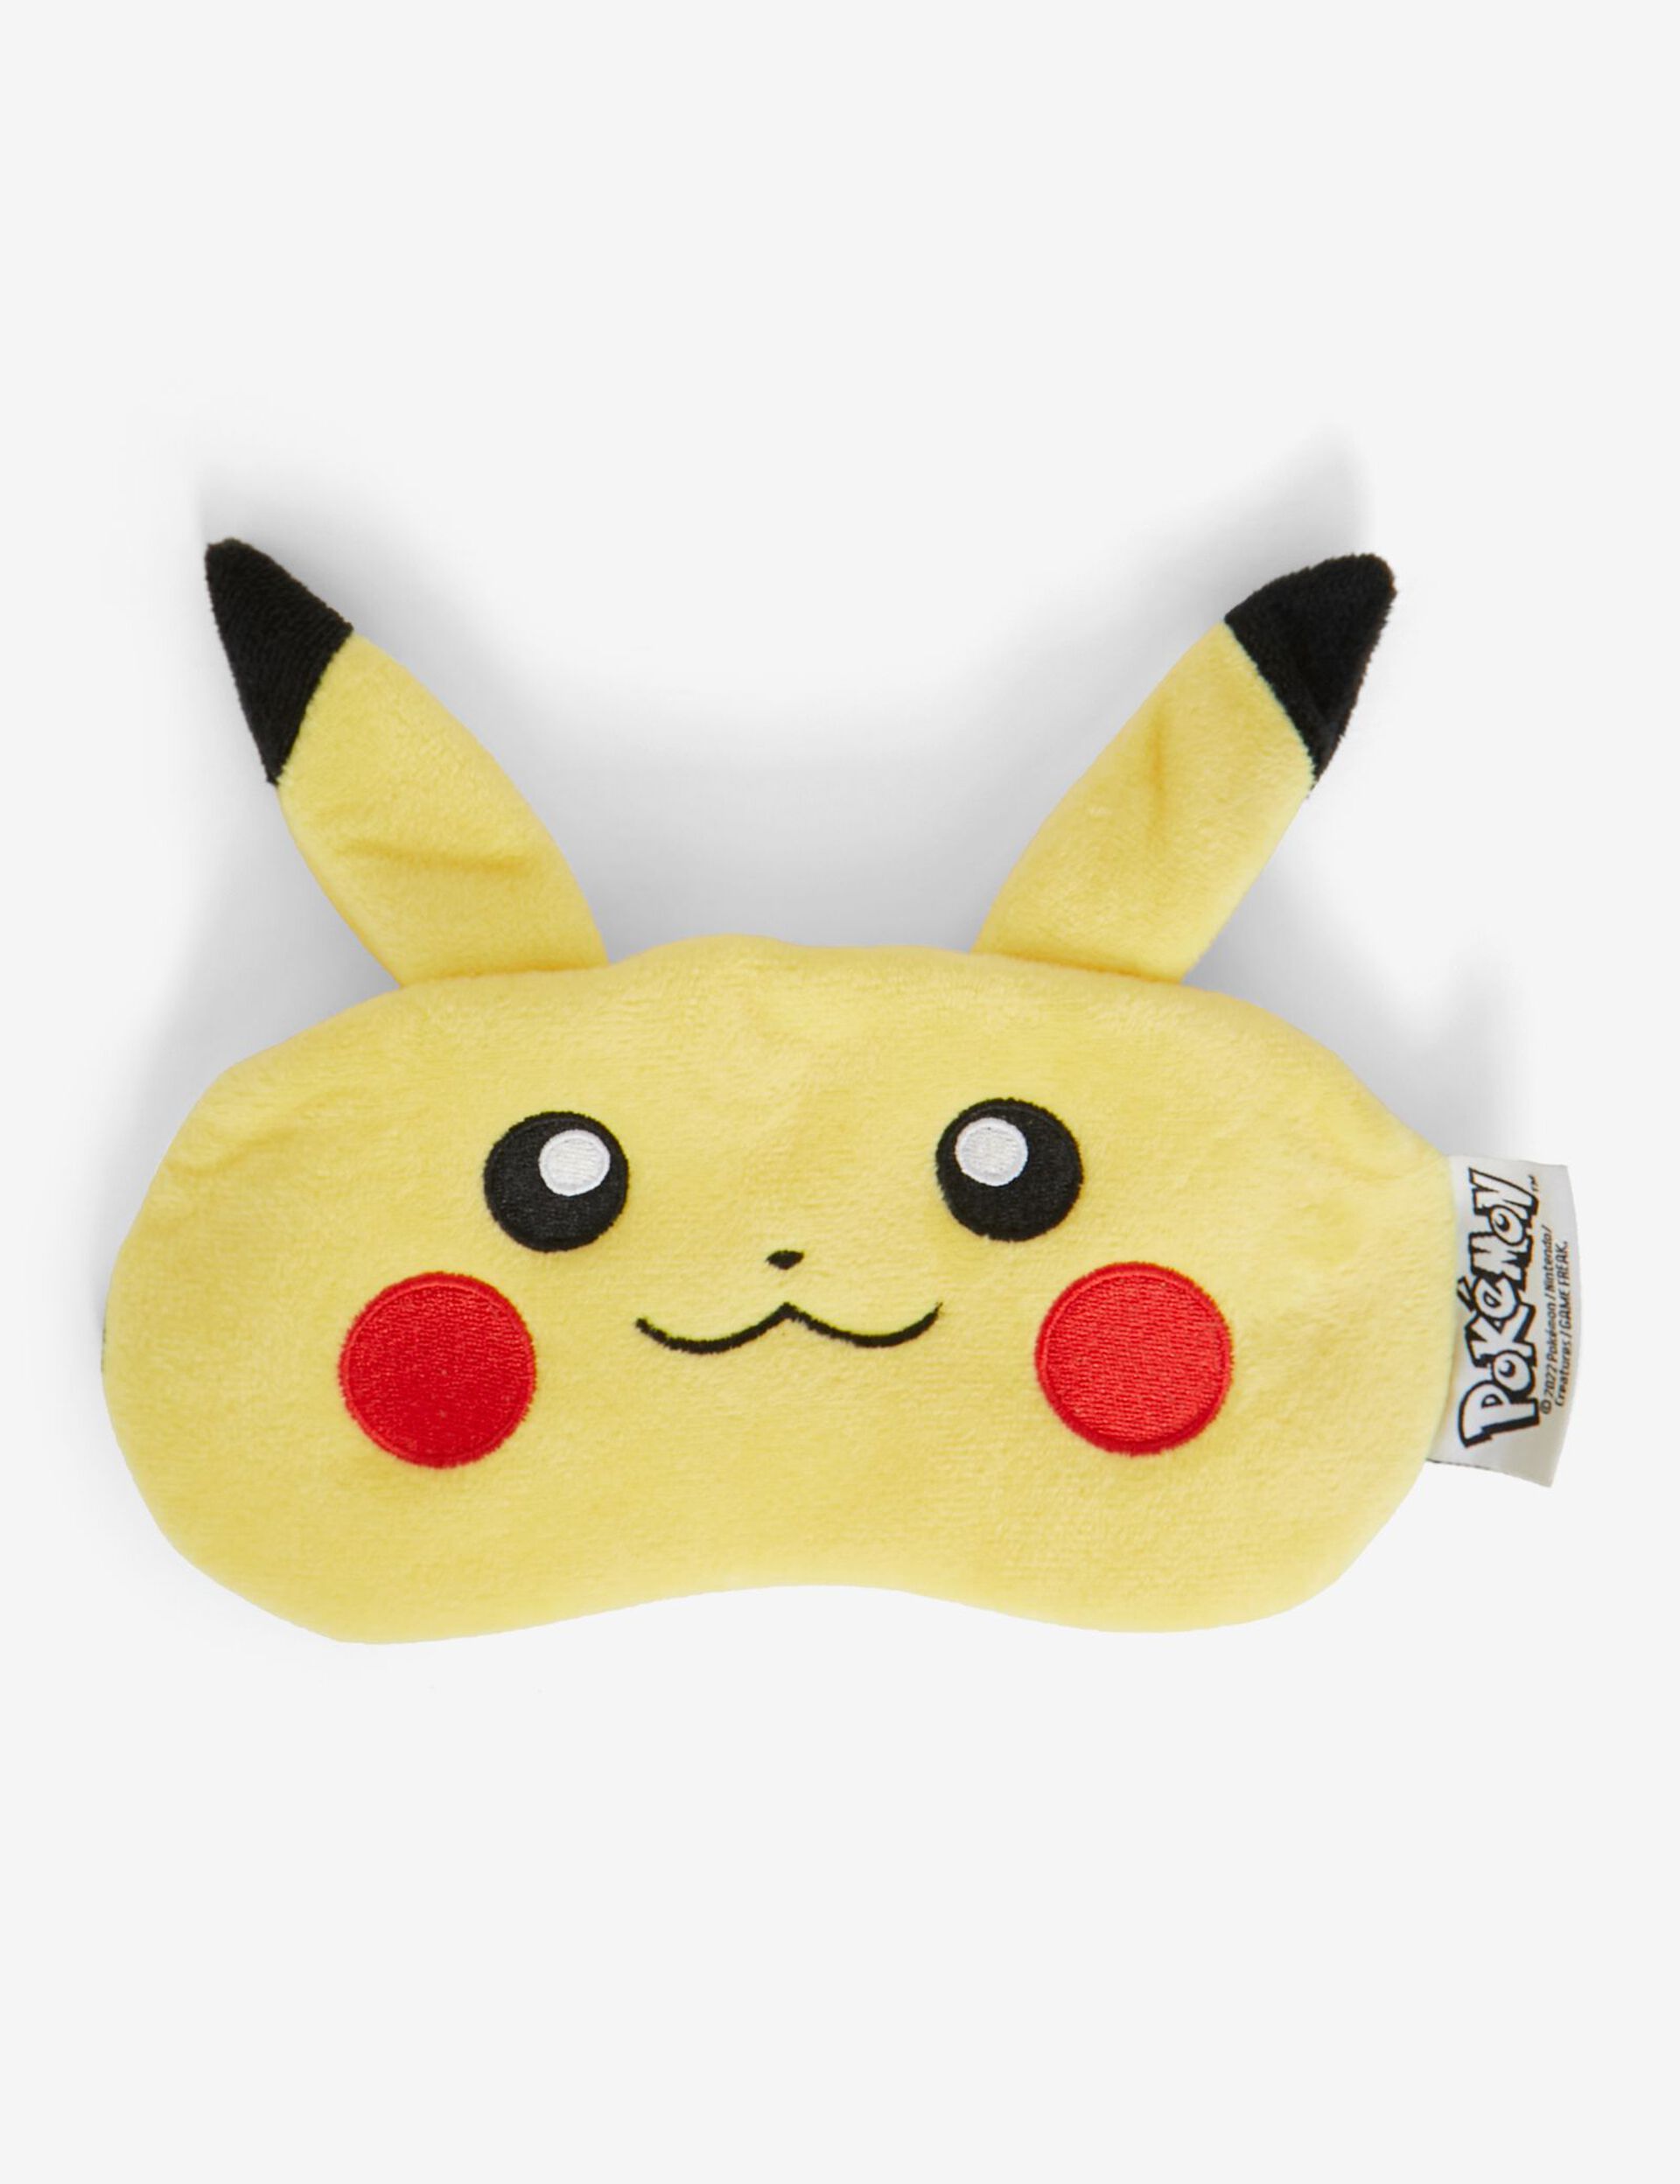 Canette avec masque de nuit Pikachu